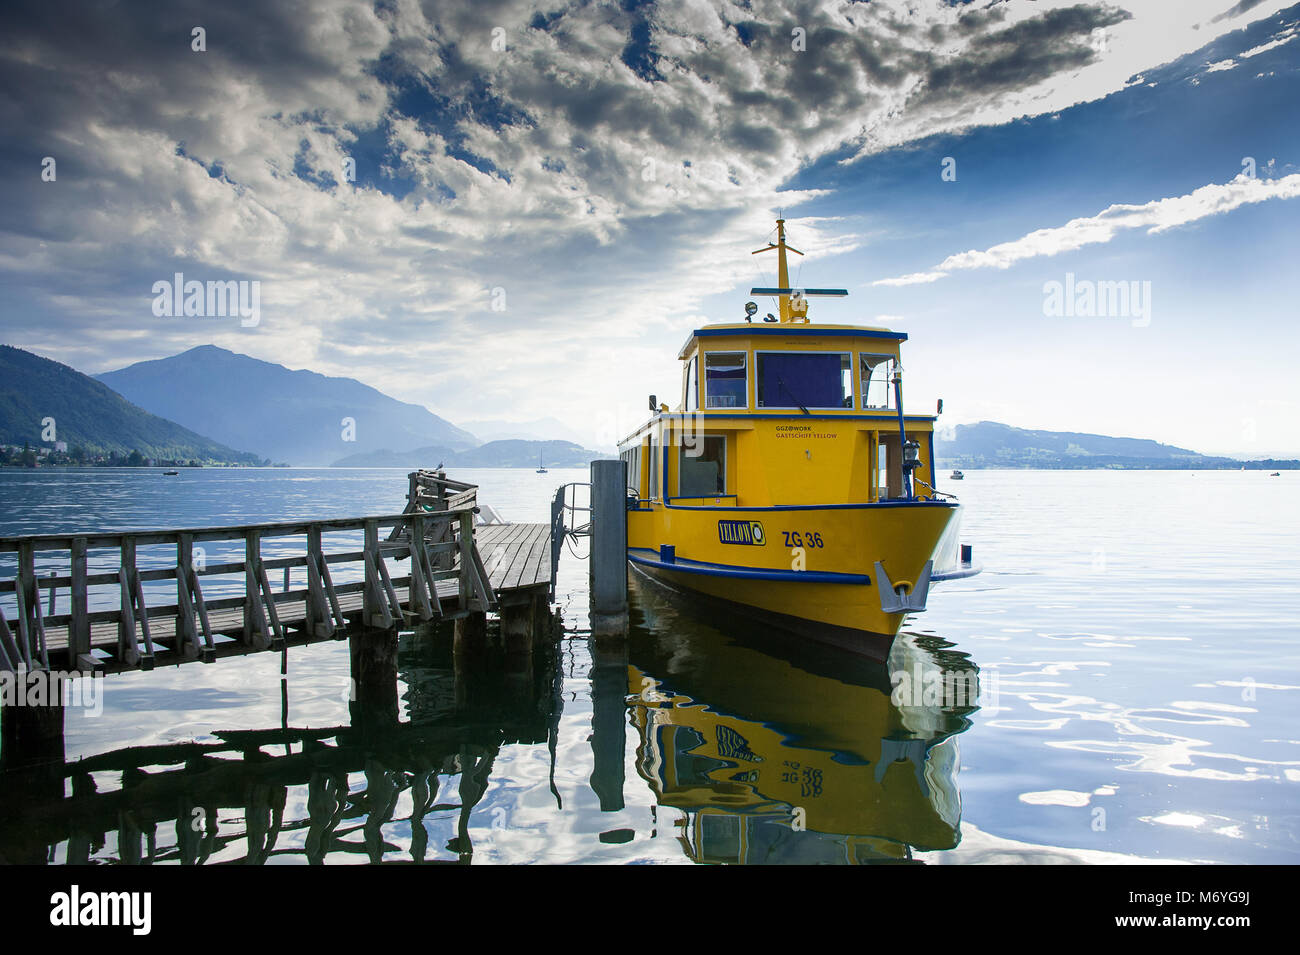 Zug, Suisse. Ciel bleu, nuages et réflexions. Barge jaune ancrée à la jetée sur le lac de Zoug. Banque D'Images